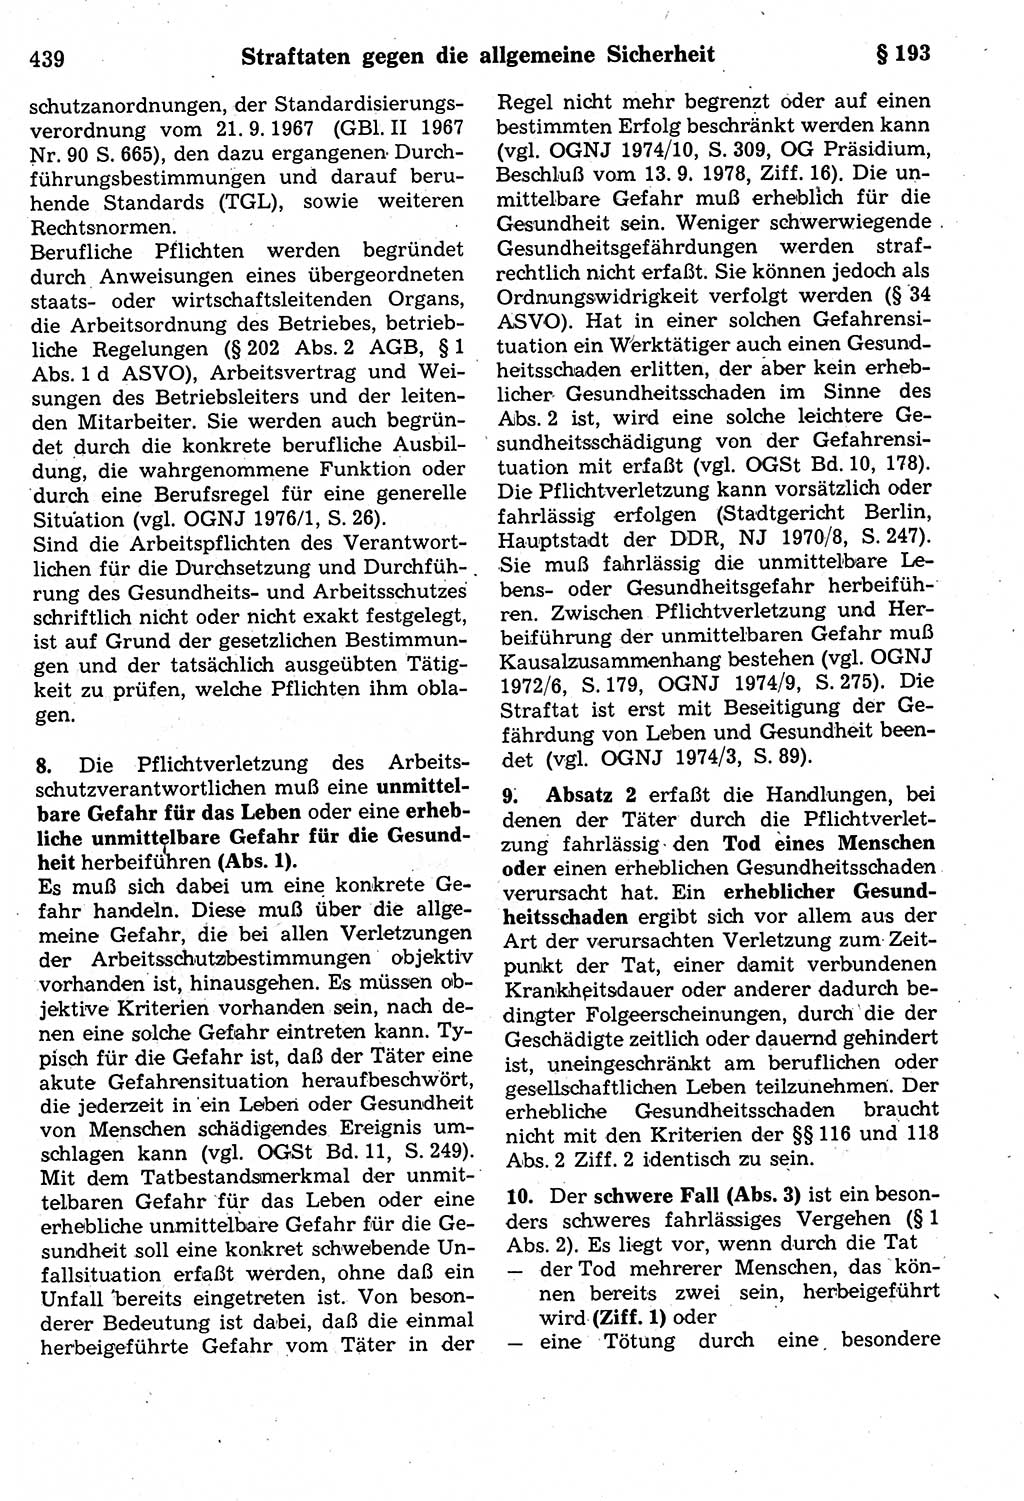 Strafrecht der Deutschen Demokratischen Republik (DDR), Kommentar zum Strafgesetzbuch (StGB) 1987, Seite 439 (Strafr. DDR Komm. StGB 1987, S. 439)